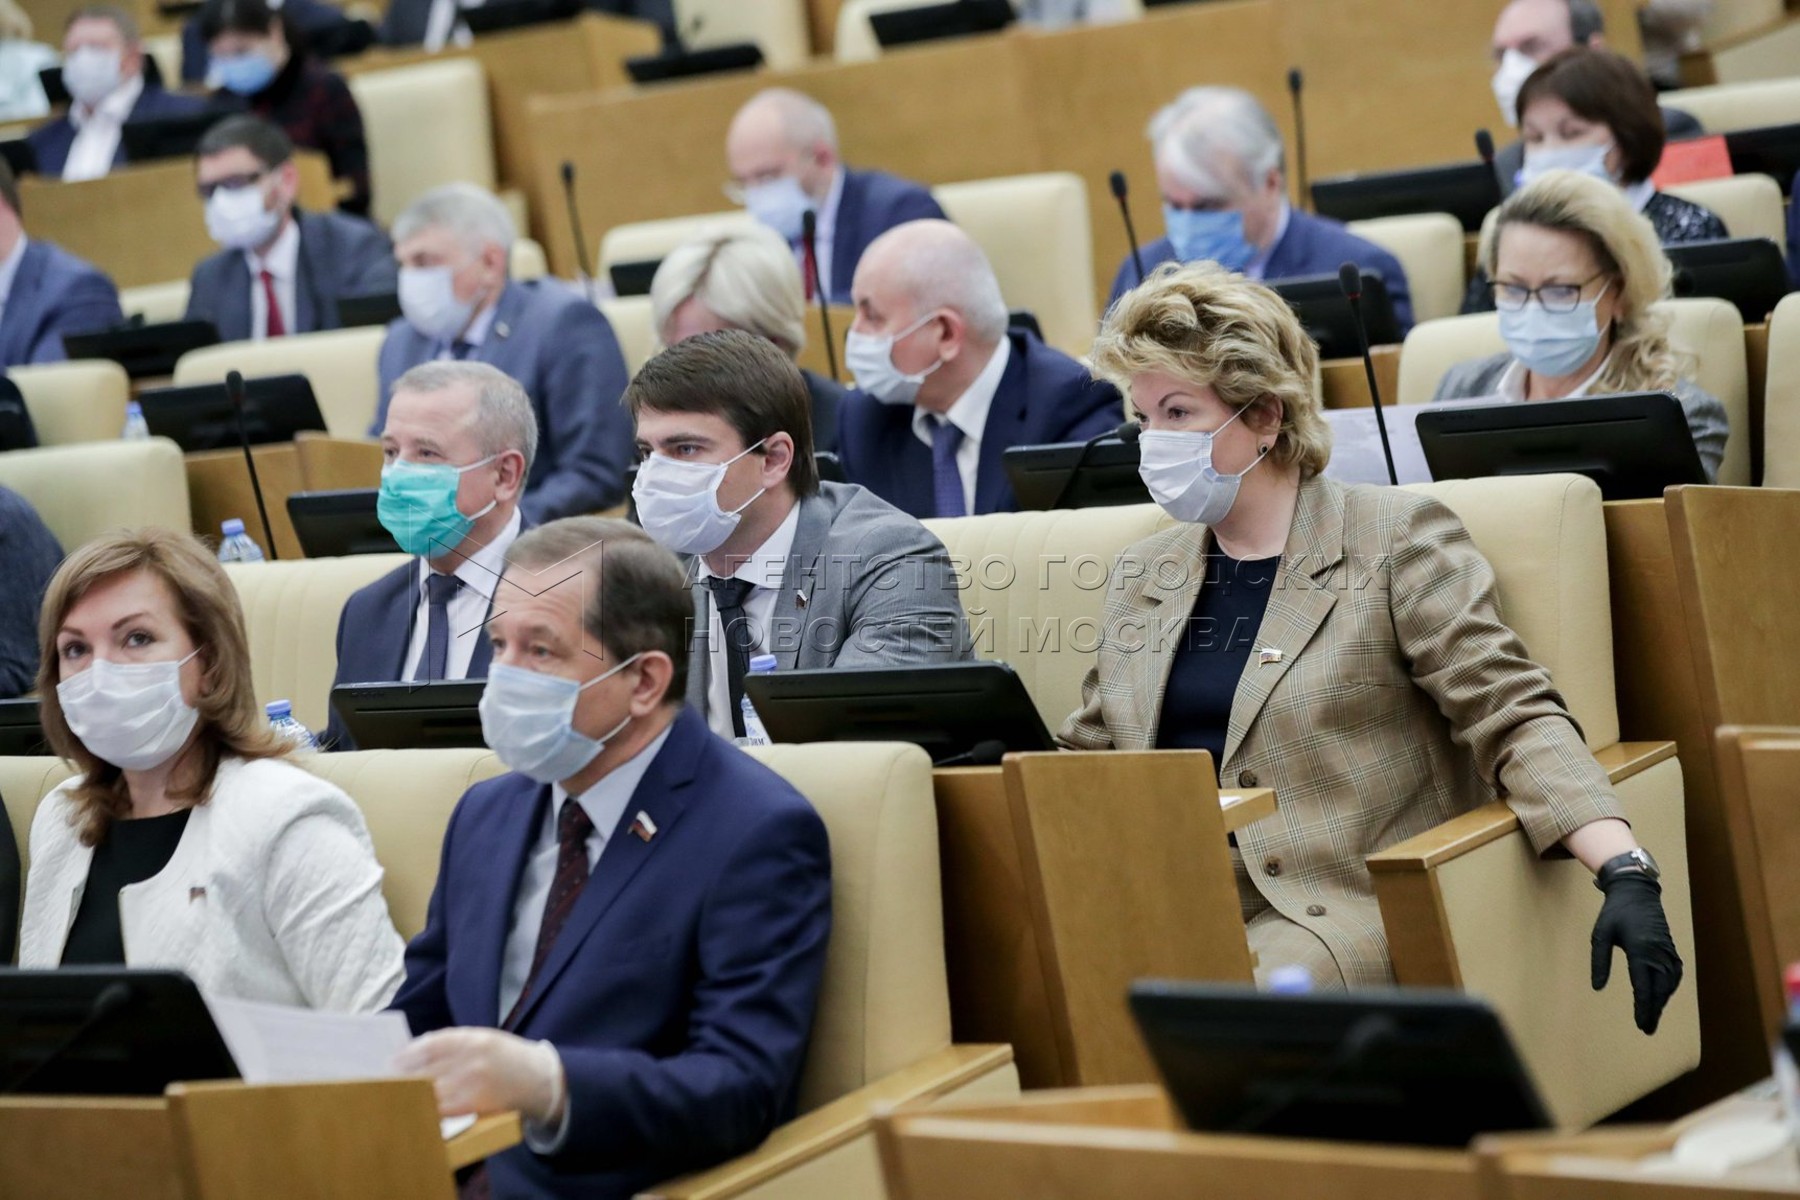 Депутаты справедливой россии в госдуме список фото